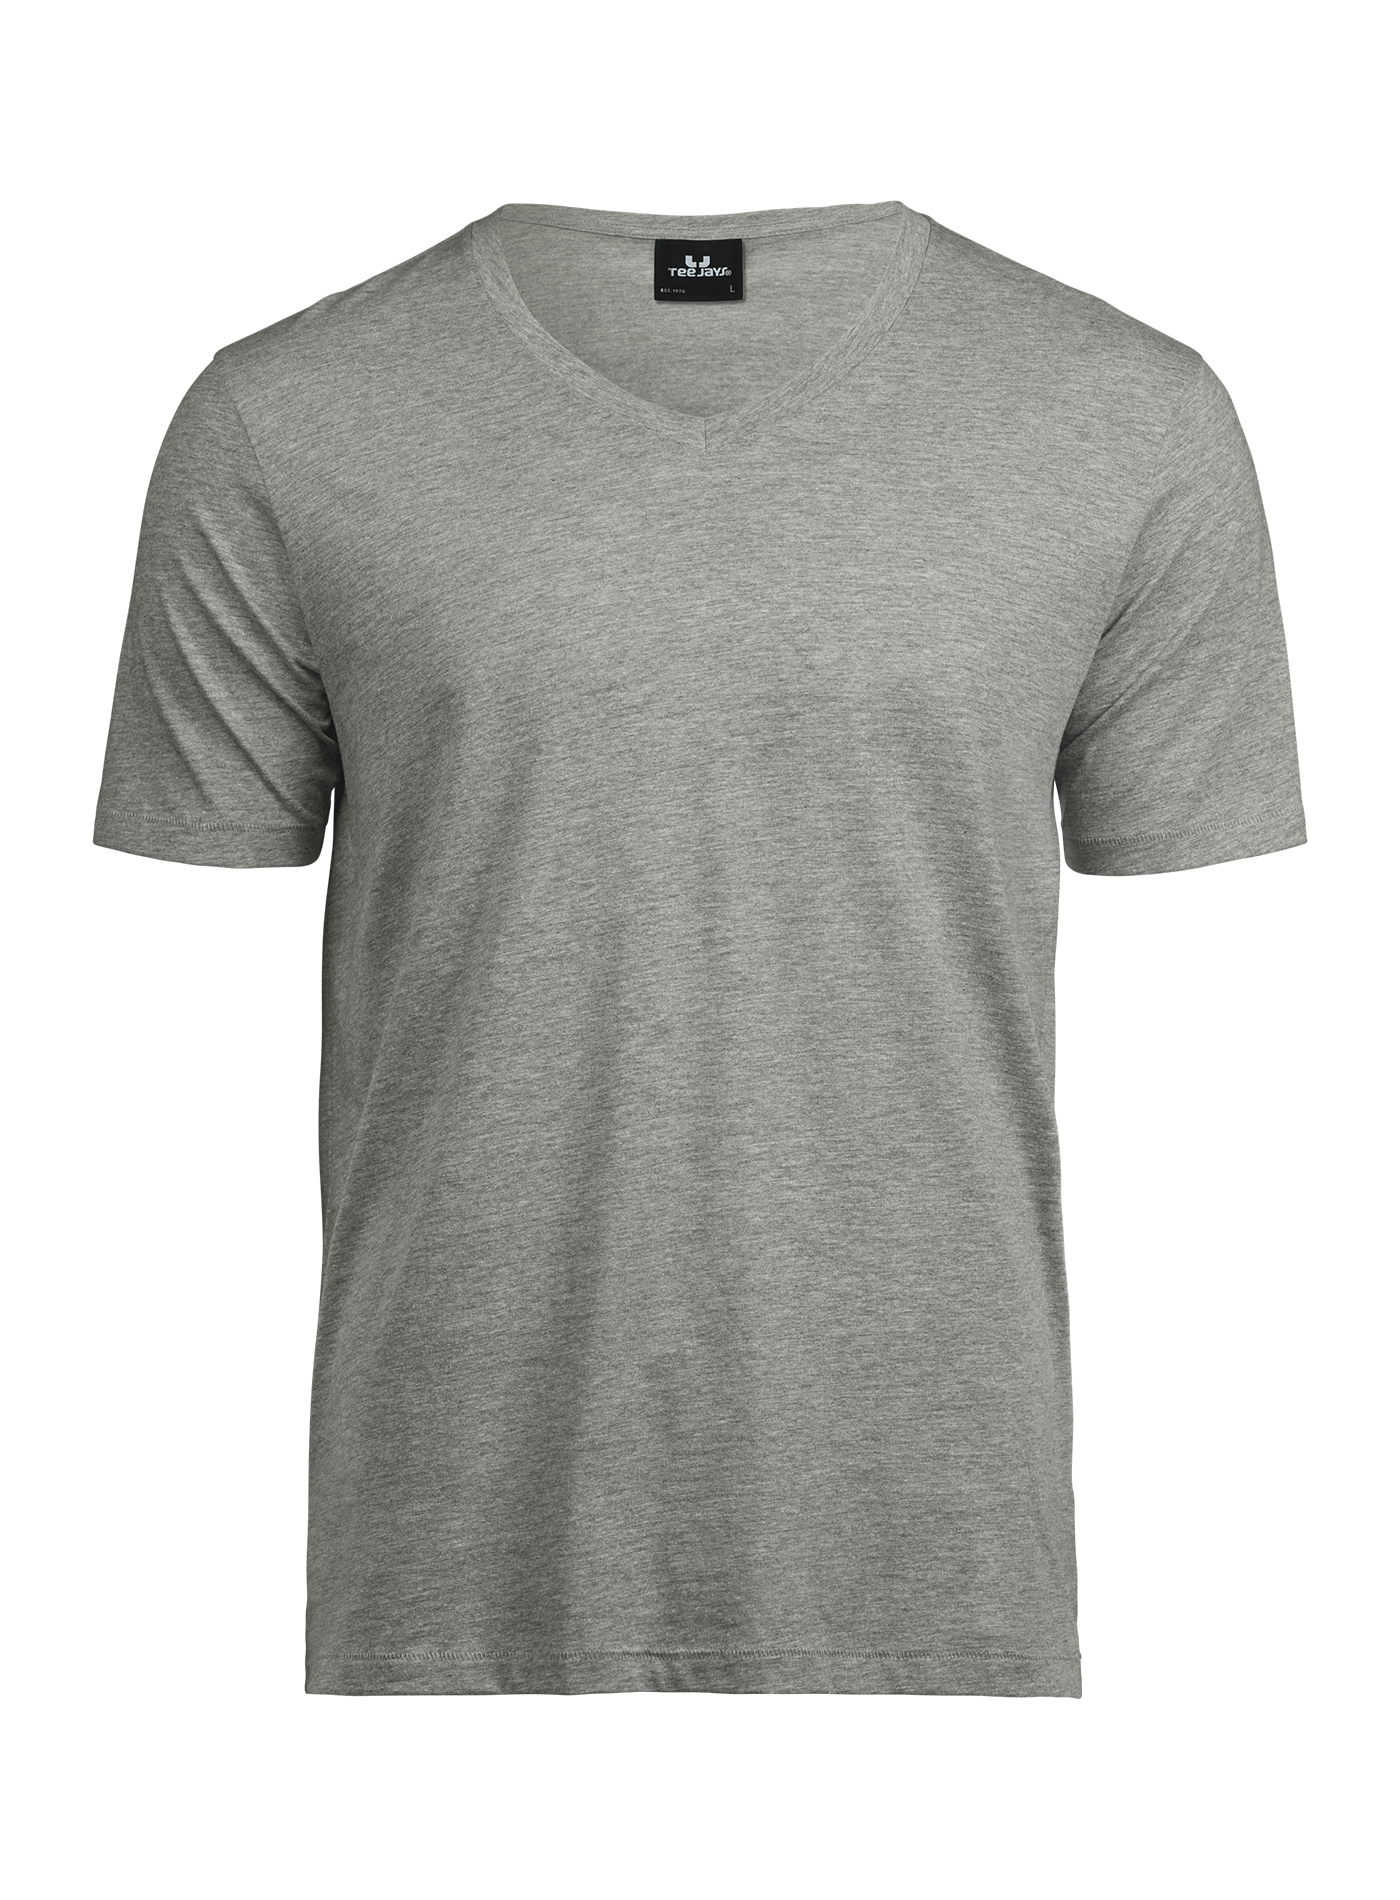 Pánské tričko s výstřihem do V Tee Jays - šedý melír L